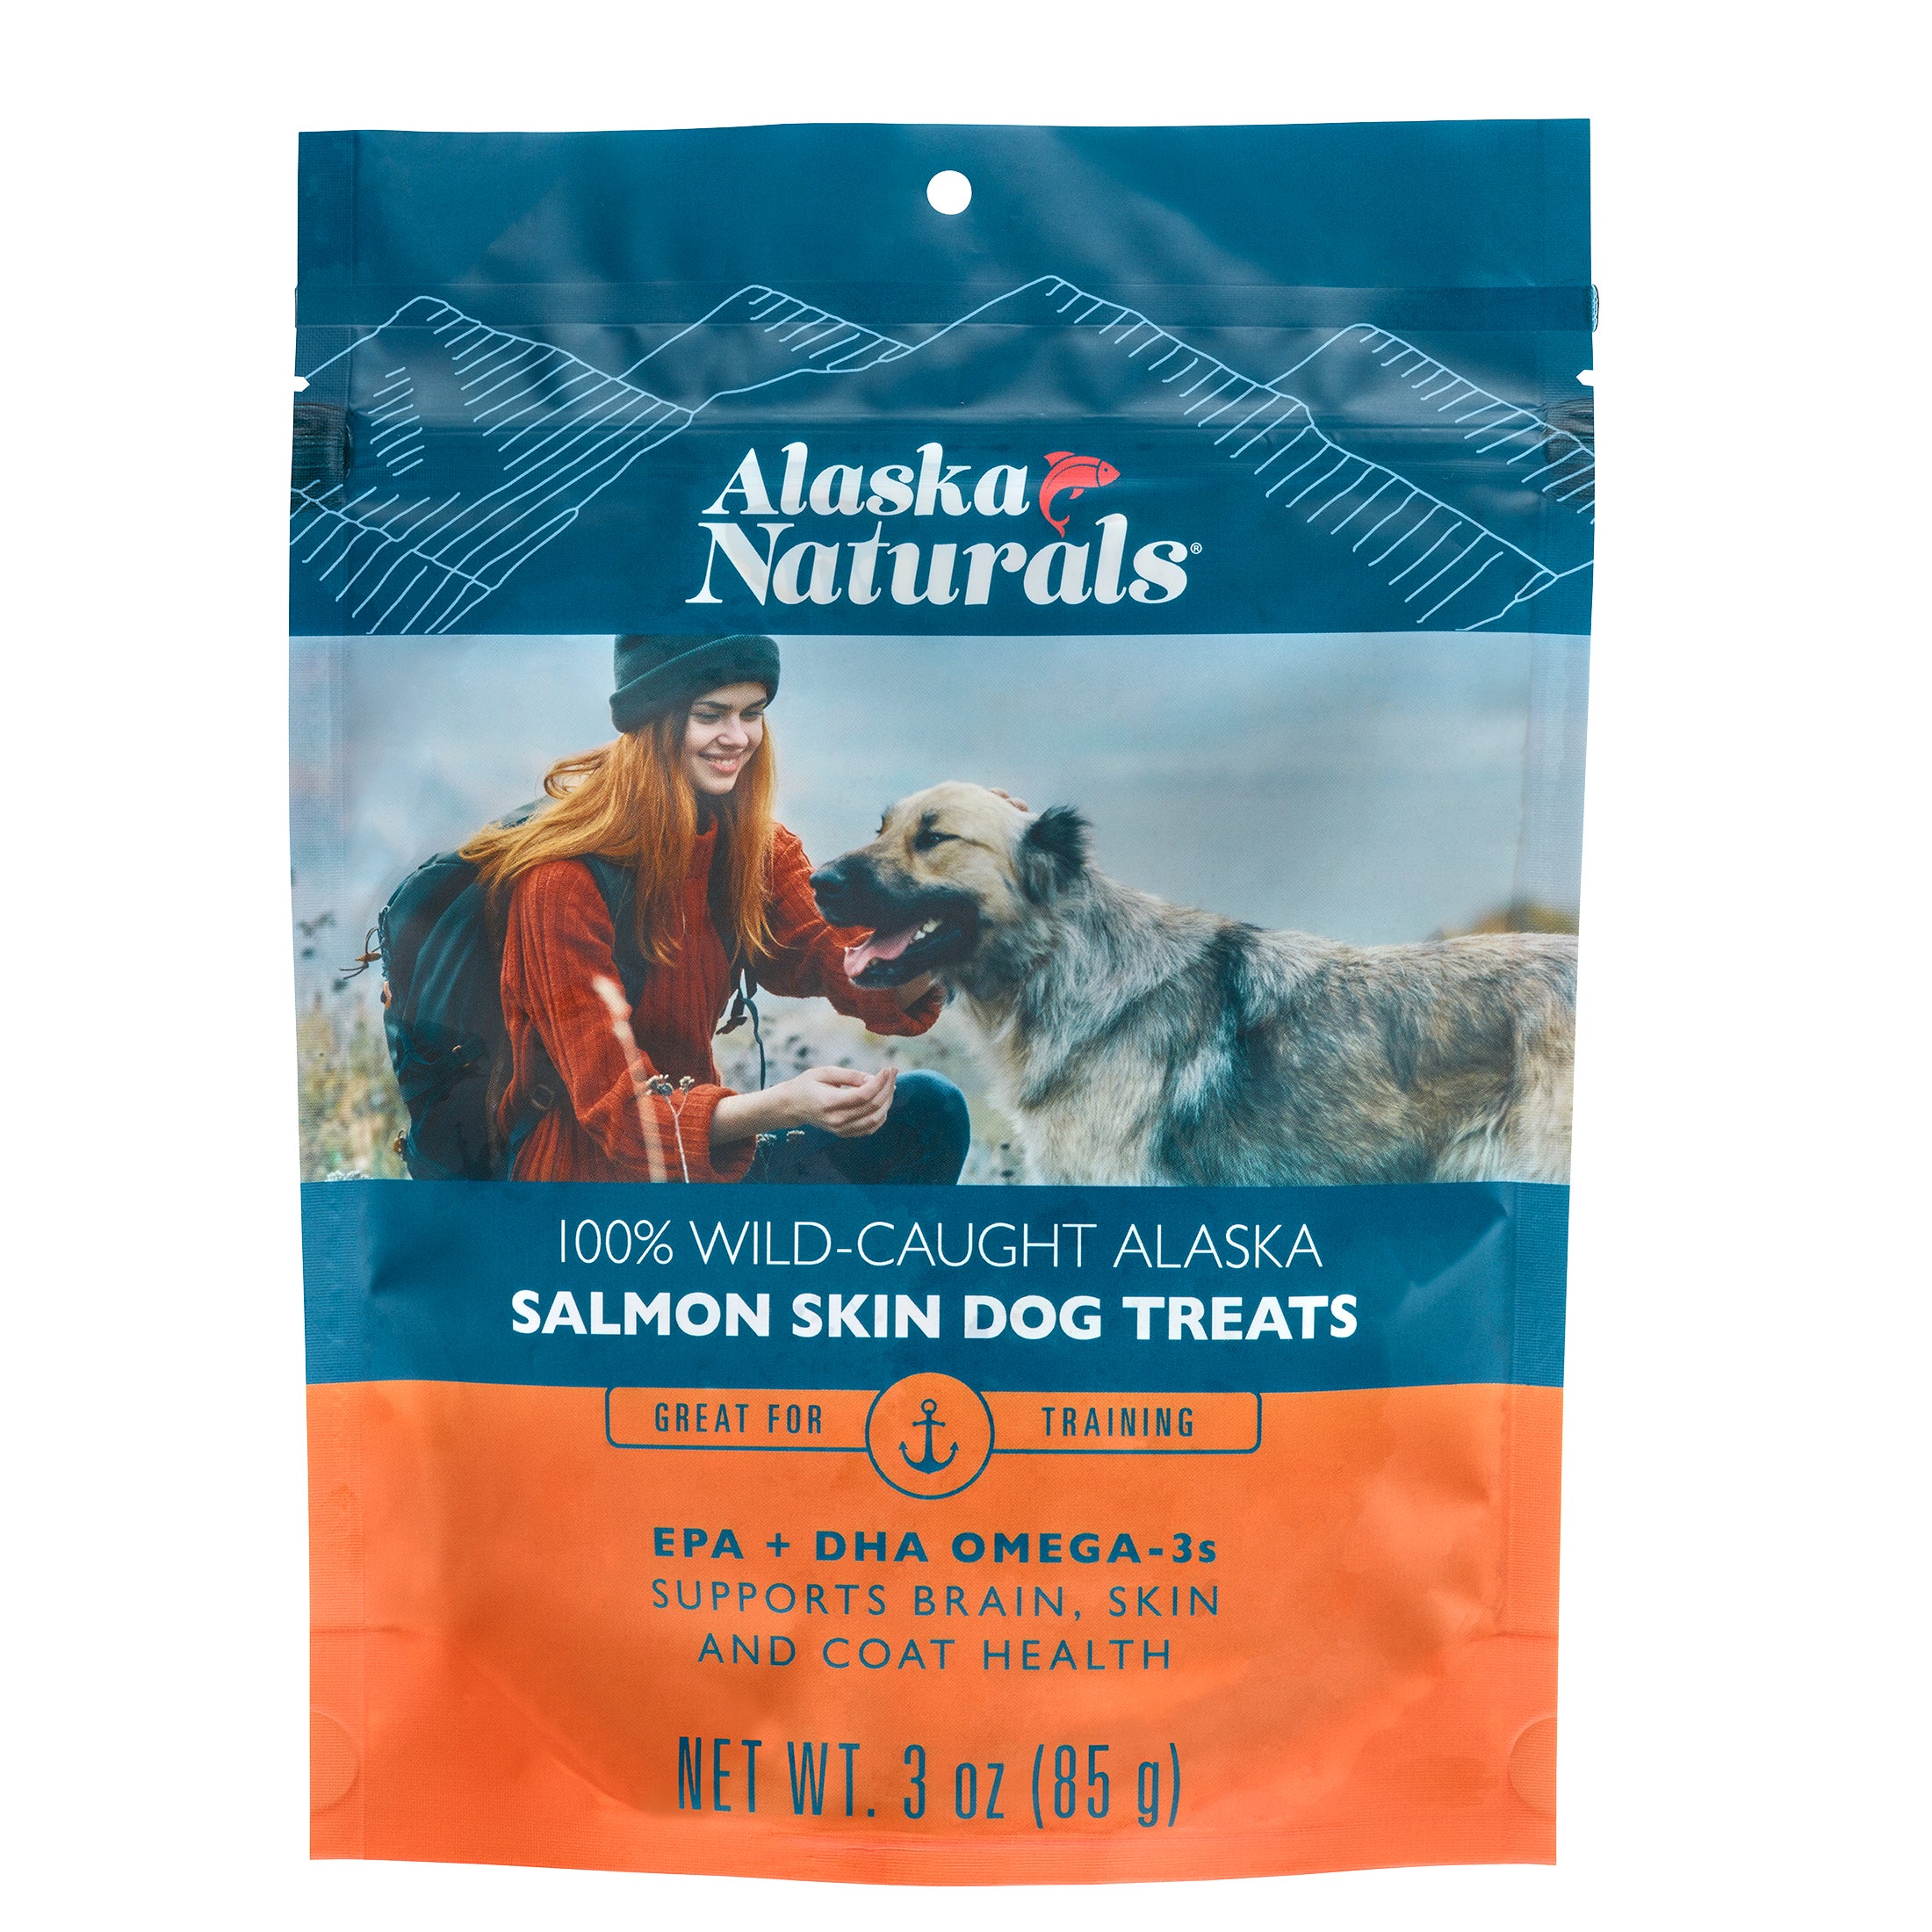 Wild-Caught Alaska Salmon Skin Dog Treats slide 0